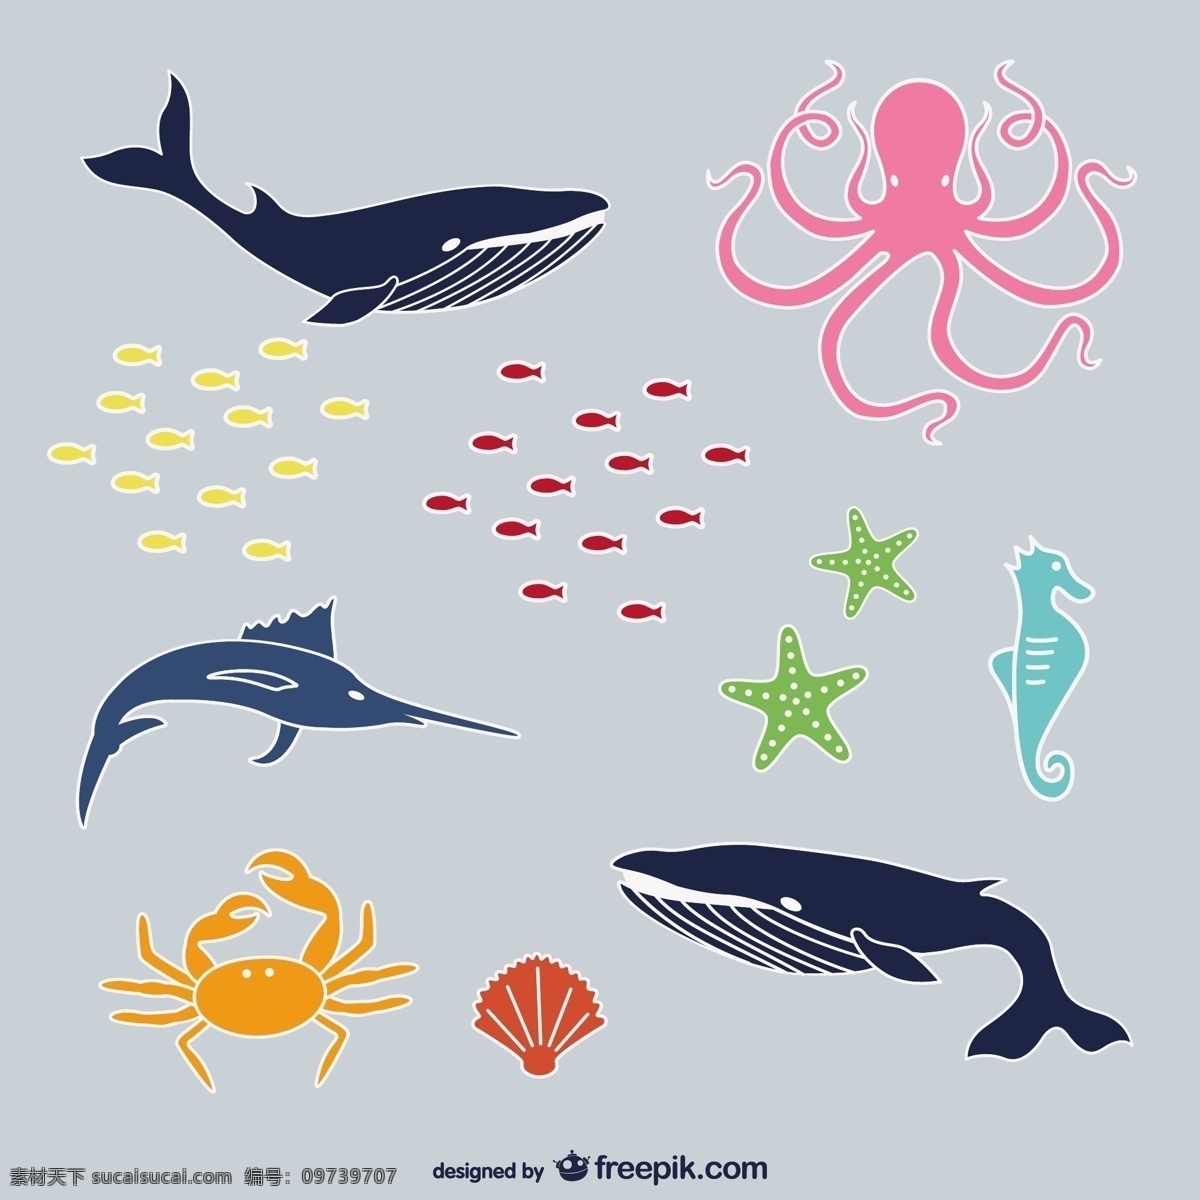 海洋动物 复古 爱 水 图标 鱼 自然 海洋 模板 动物 线 平面 人物 可爱 图形 布局 平面设计 灰色